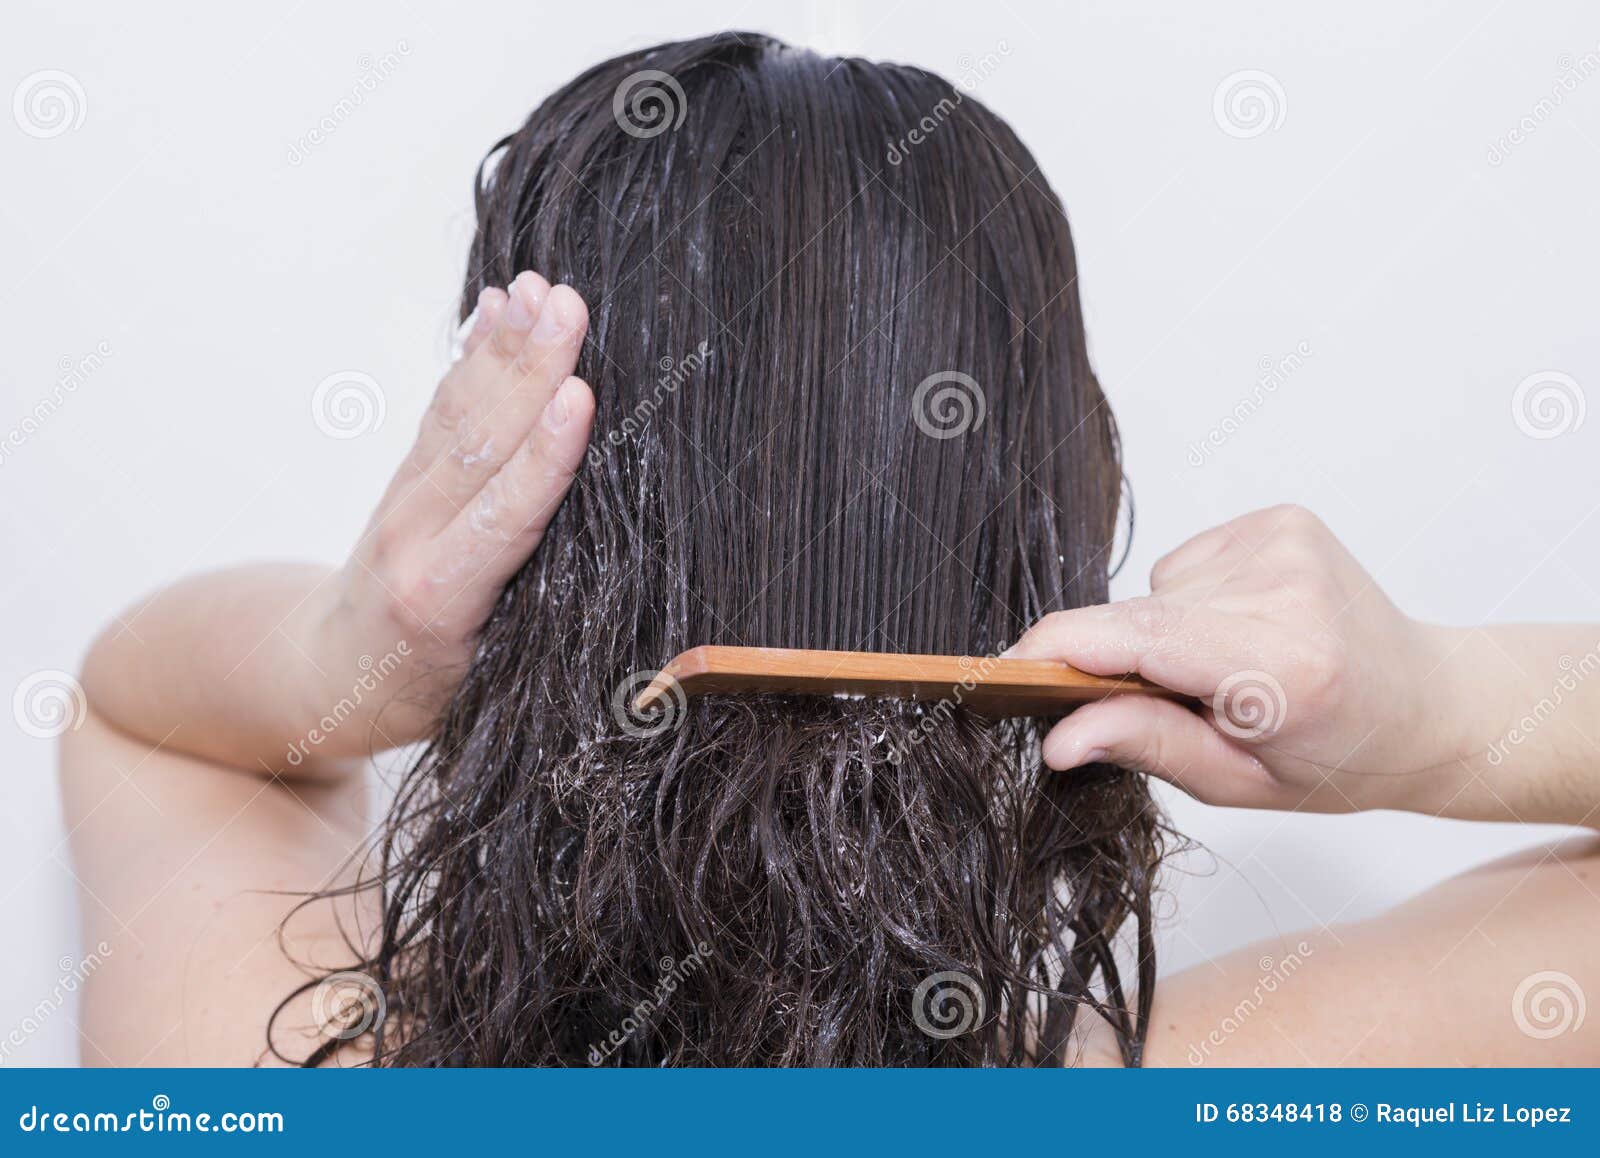 Почему нельзя расчесывать волосы. Расчесывать волосы. Расчесывание мокрых волос. Расчесывает запутанные волосы. Волосы не расчесываются.